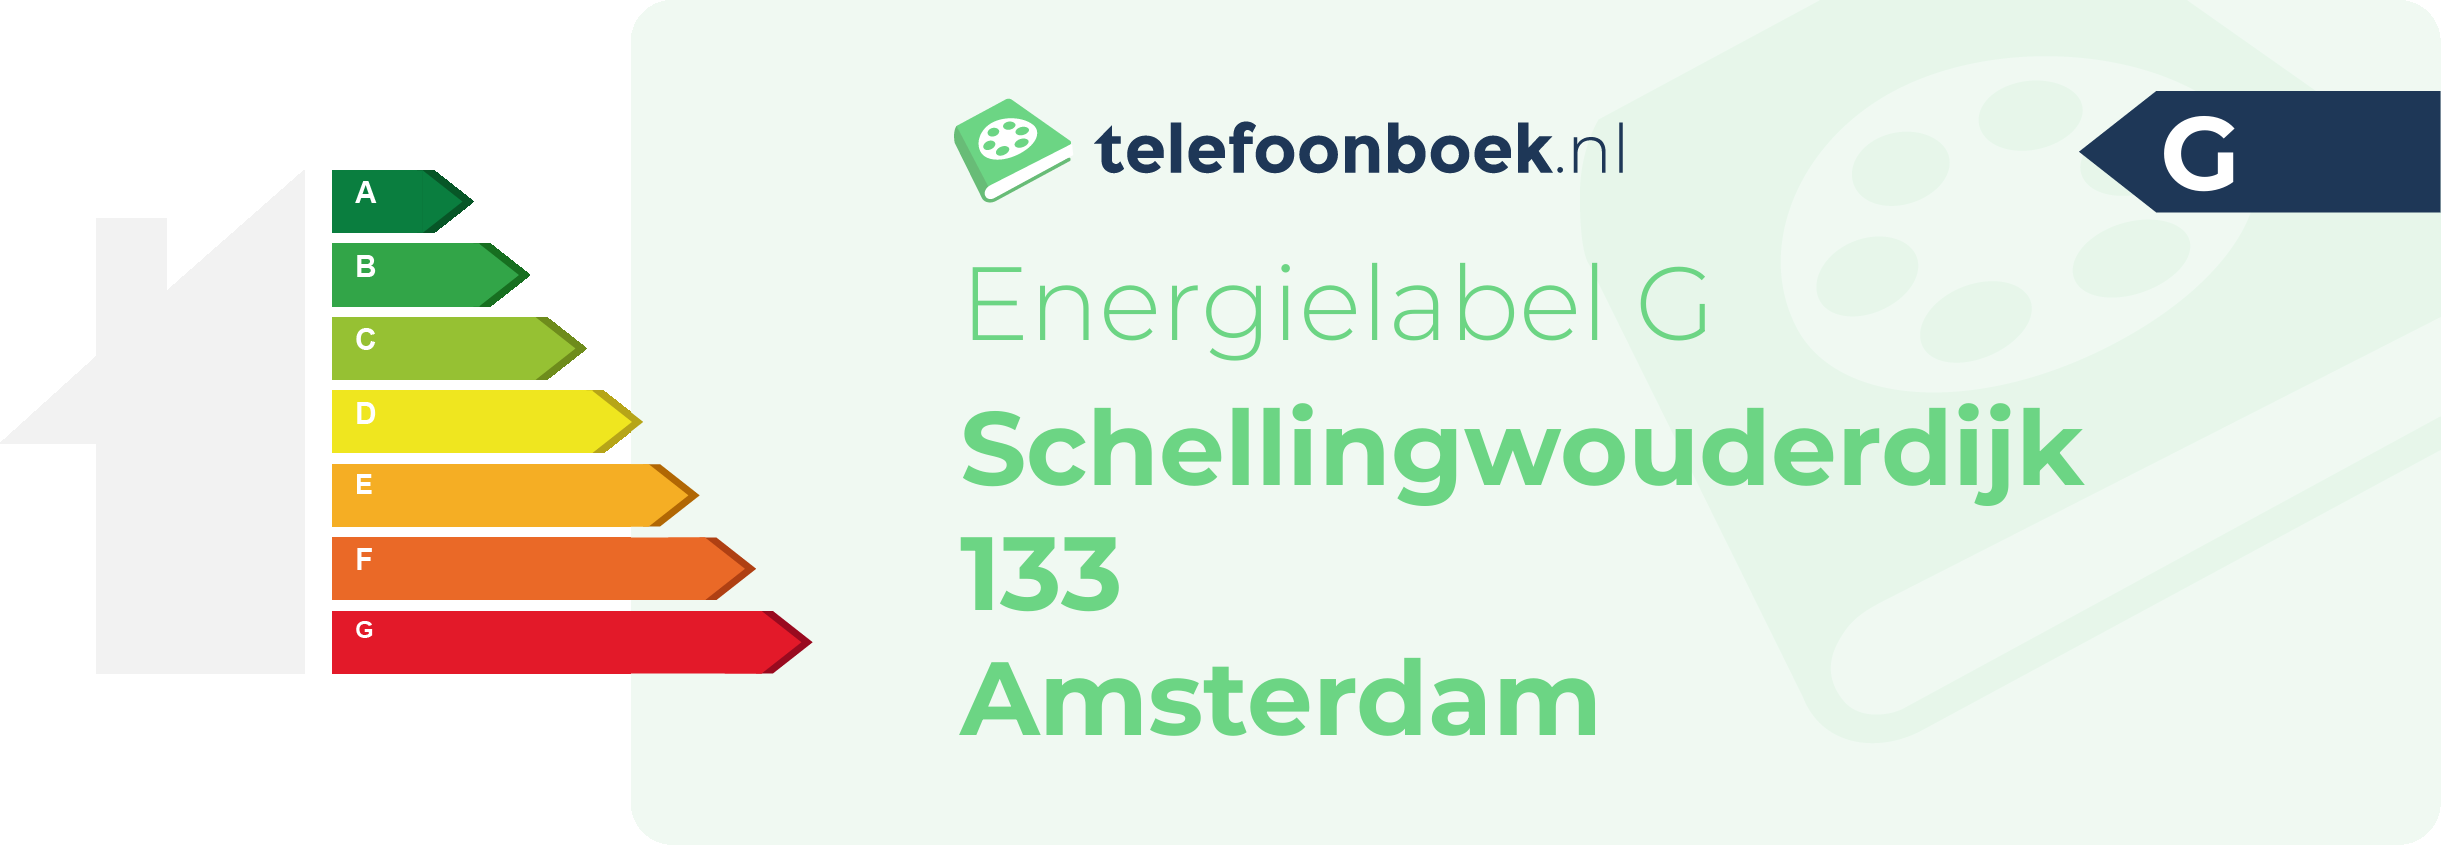 Energielabel Schellingwouderdijk 133 Amsterdam